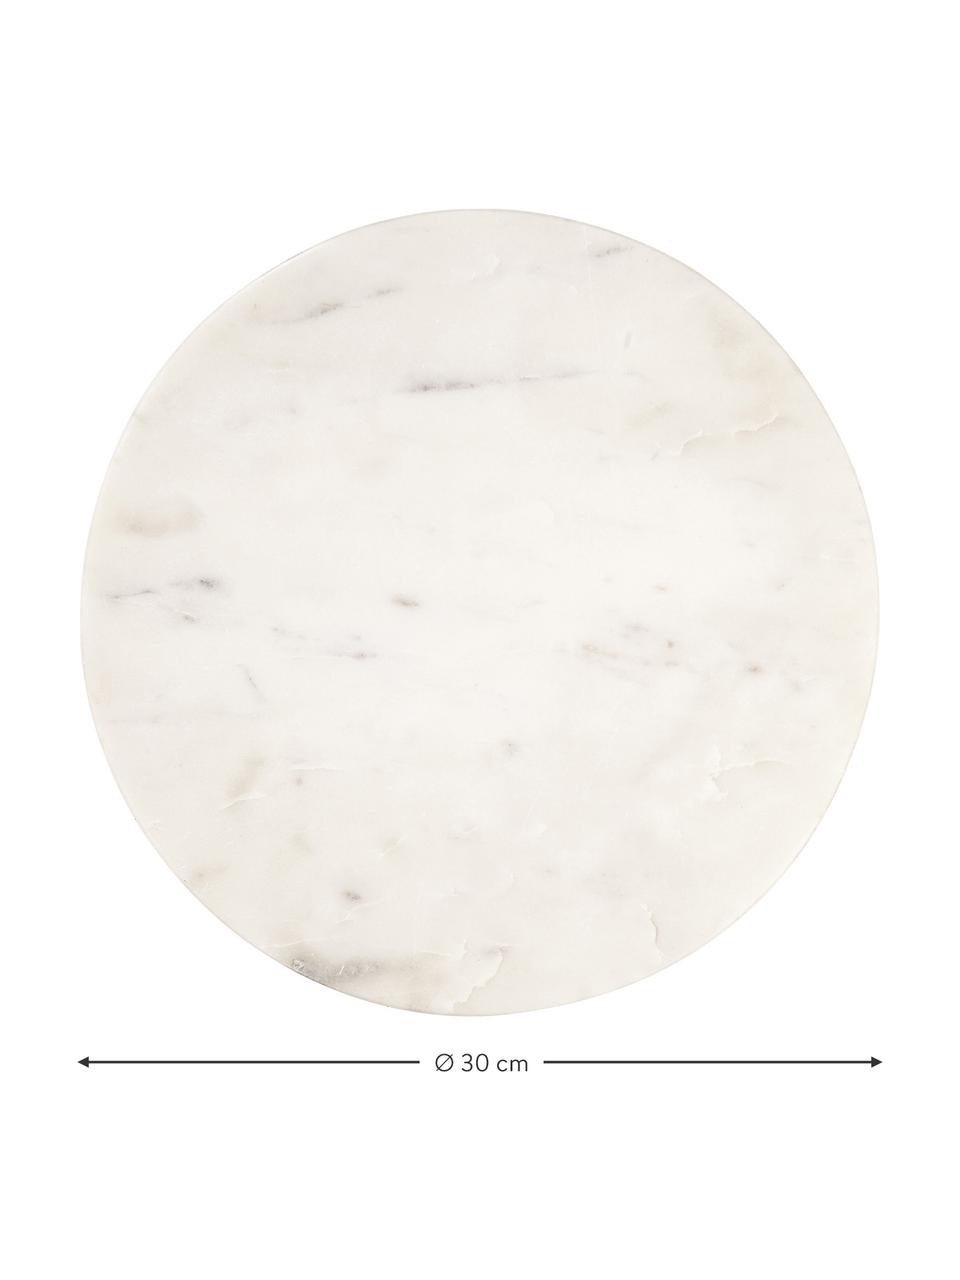 Plat de service marbre Minu, Ø 30 cm, Marbre, Blanc, Ø 30 cm